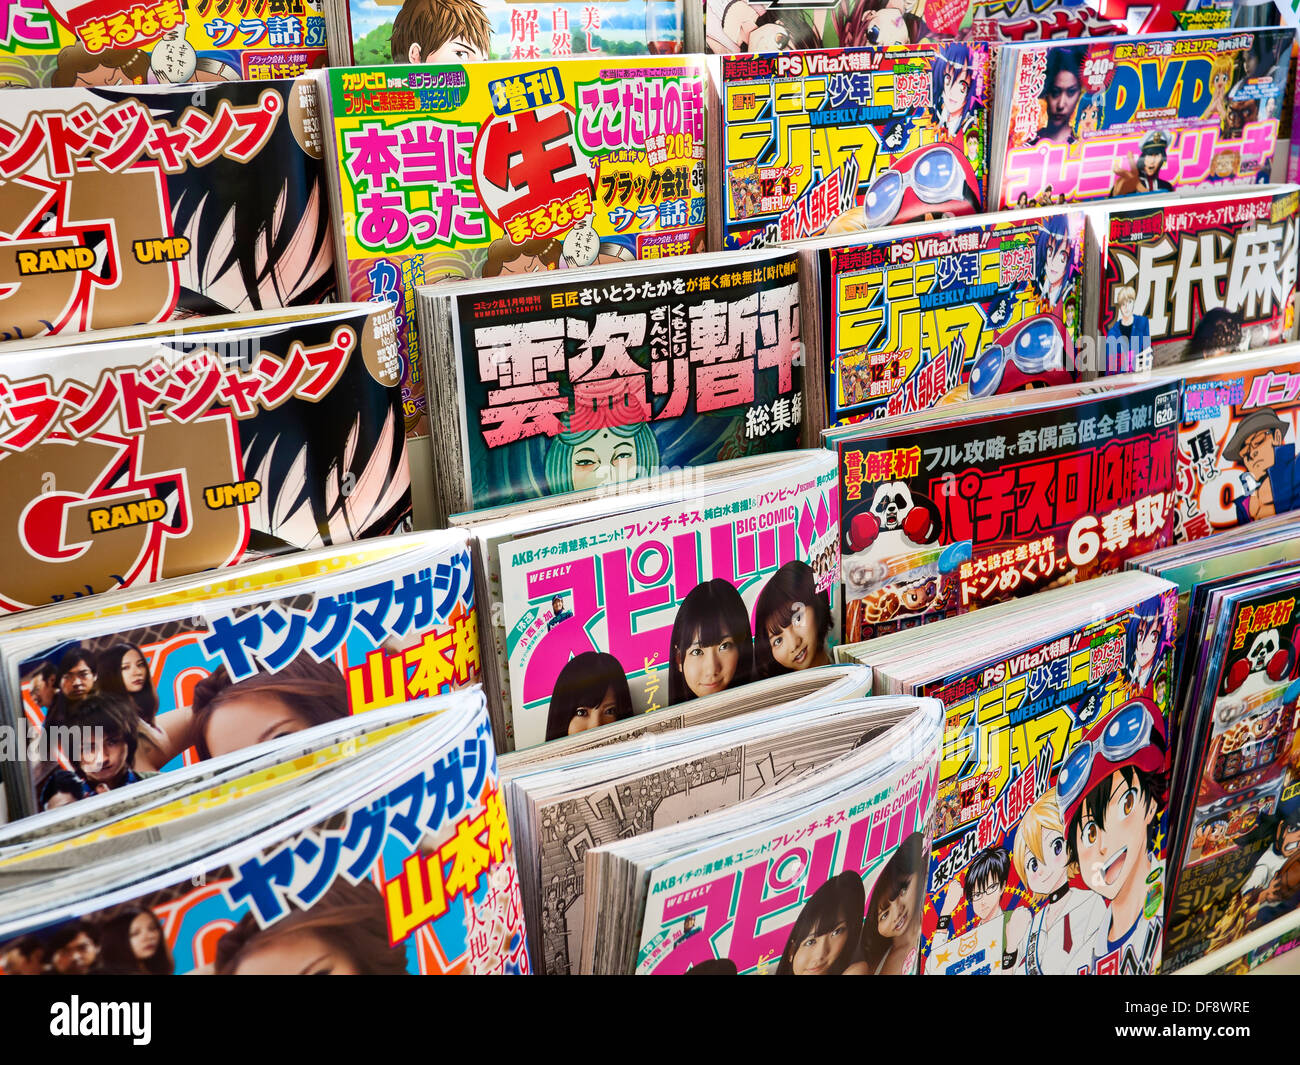 Anime manga books